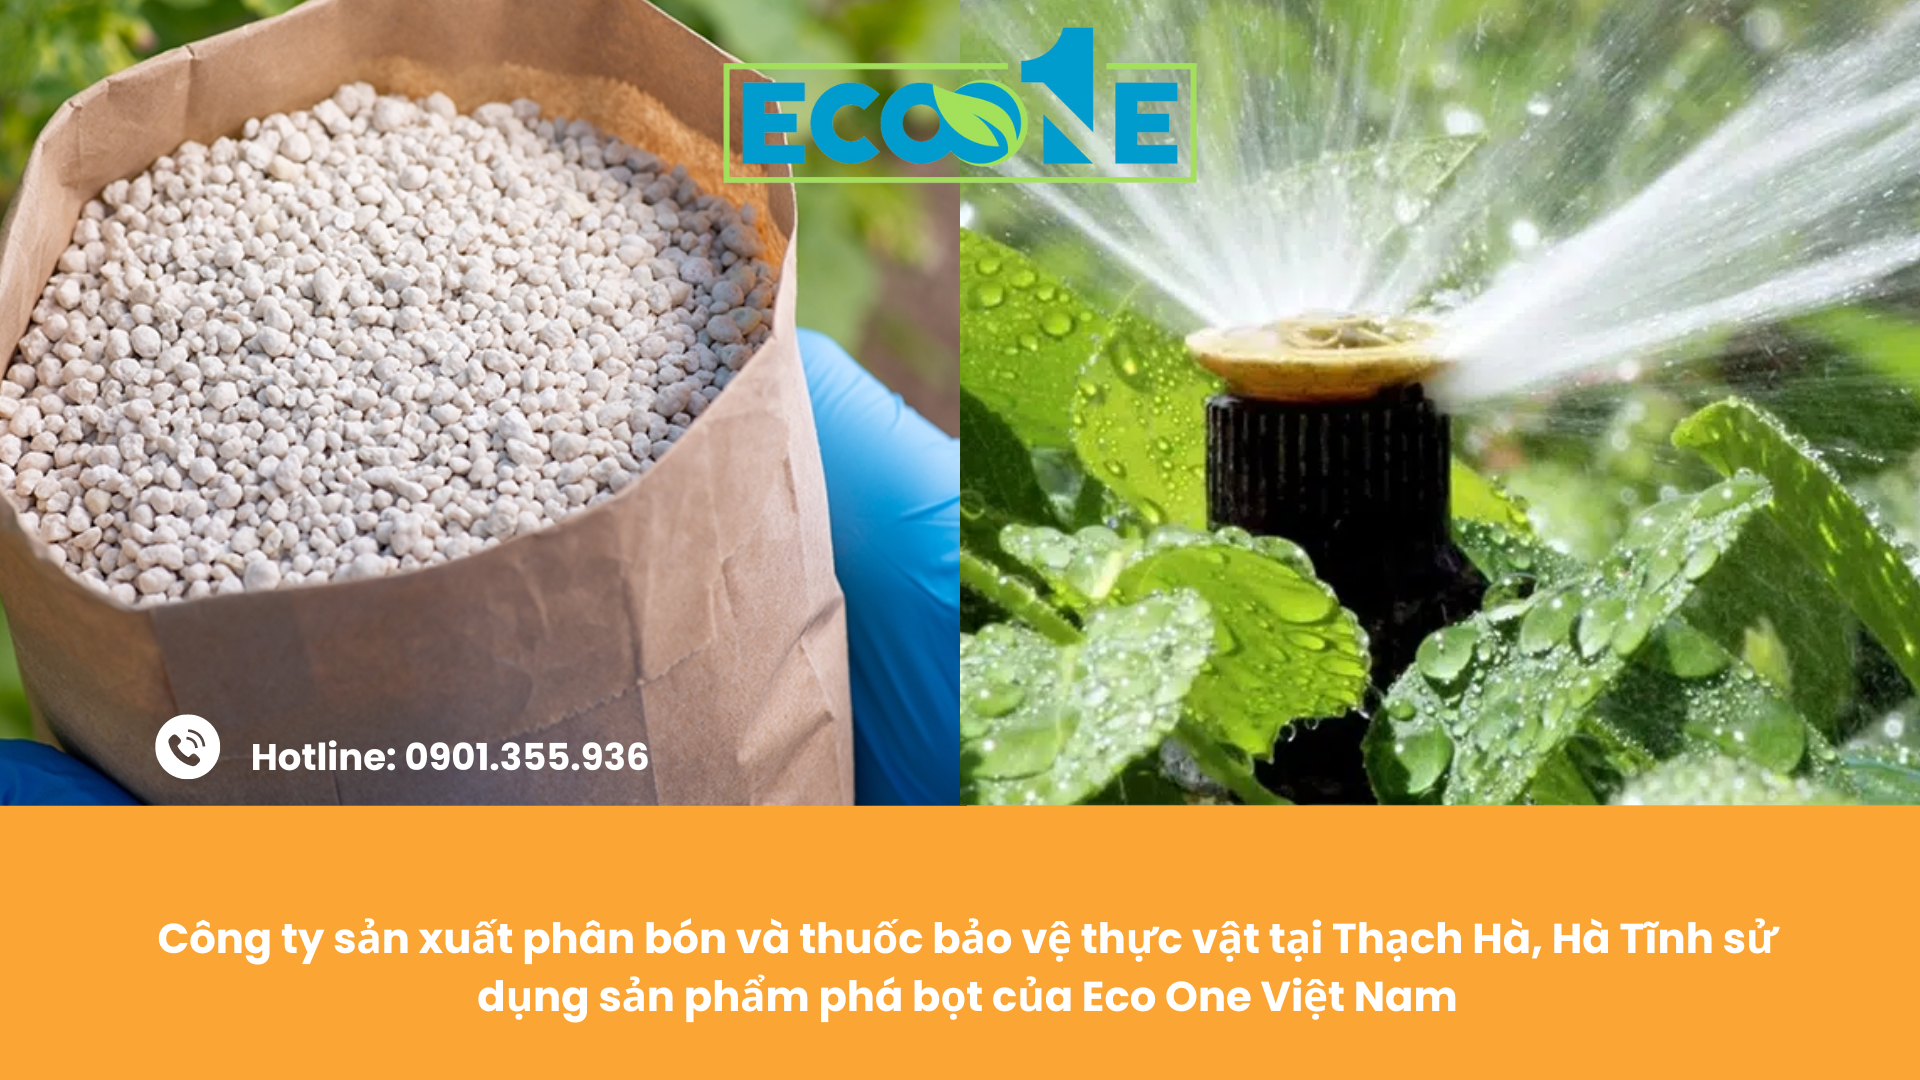 Công ty sản xuất phân bón và thuốc bảo vệ thực vật tại Thạch Hà, Hà Tĩnh sử dụng sản phẩm phá bọt của Eco One Việt Nam